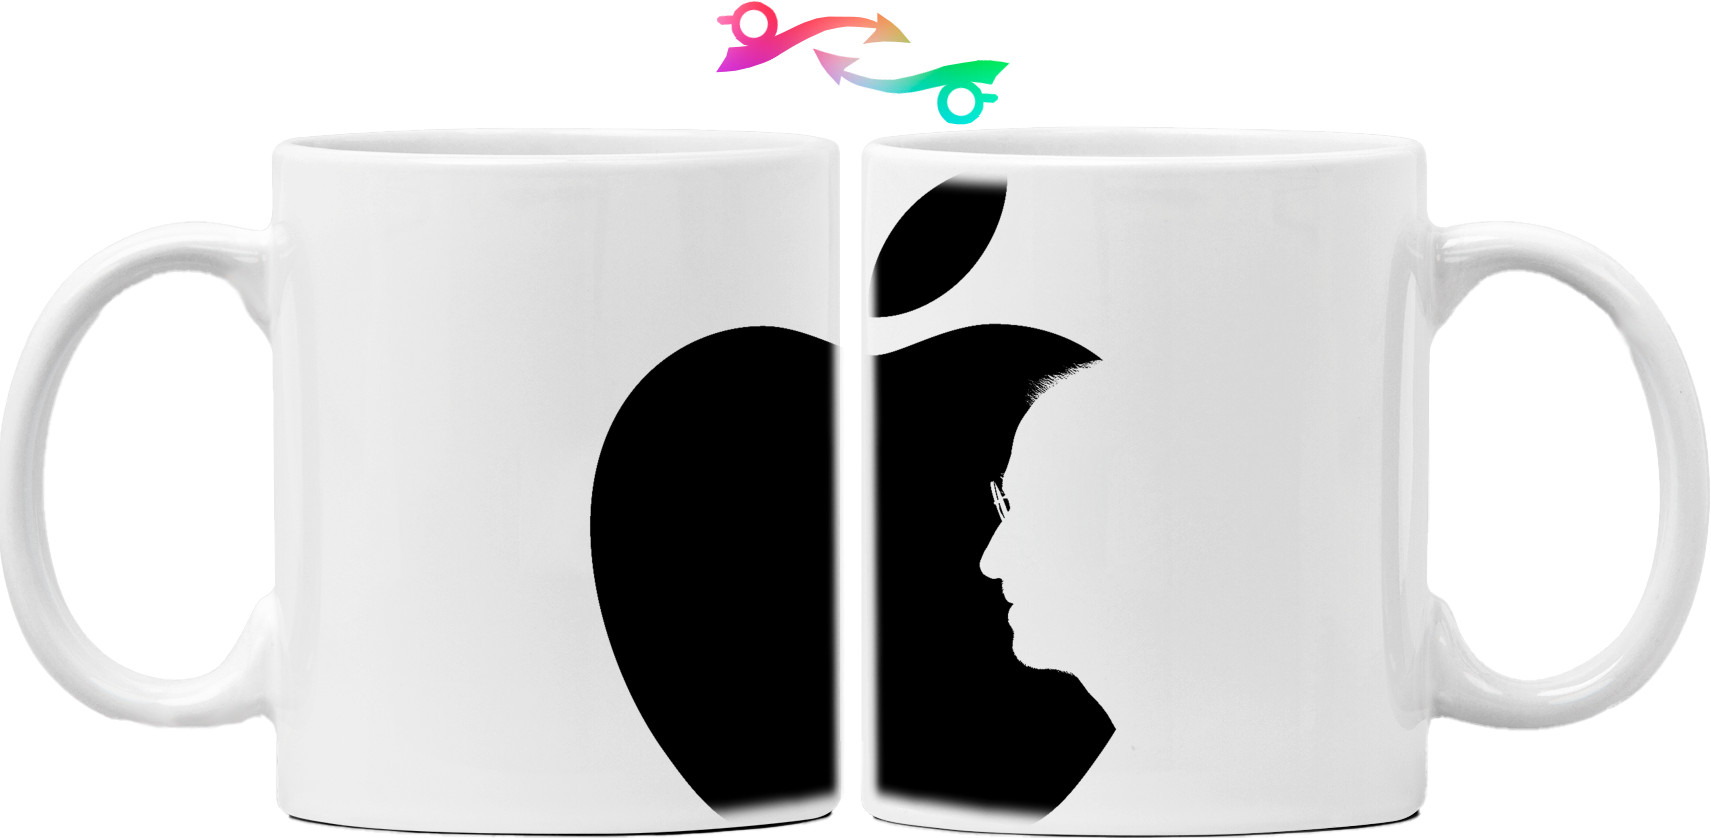 Каталог - Кружка - Стив Джобс Apple - Mfest